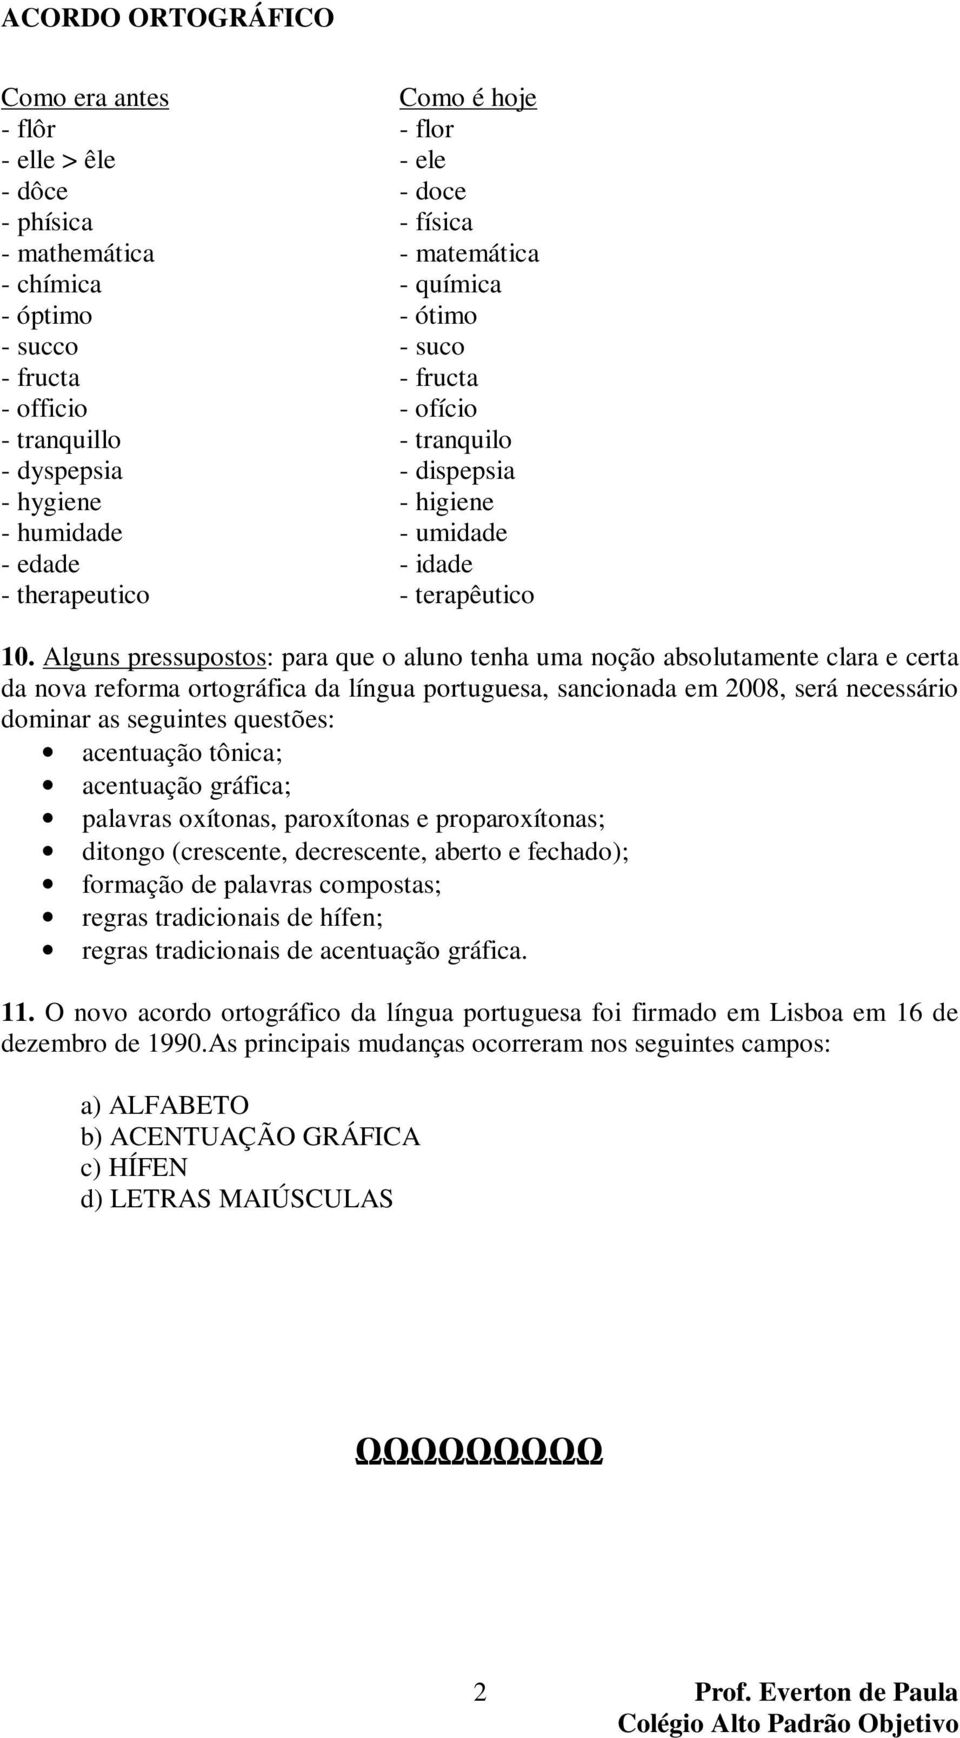 Alguns pressupostos: para que o aluno tenha uma noção absolutamente clara e certa da nova reforma ortográfica da língua portuguesa, sancionada em 2008, será necessário dominar as seguintes questões: